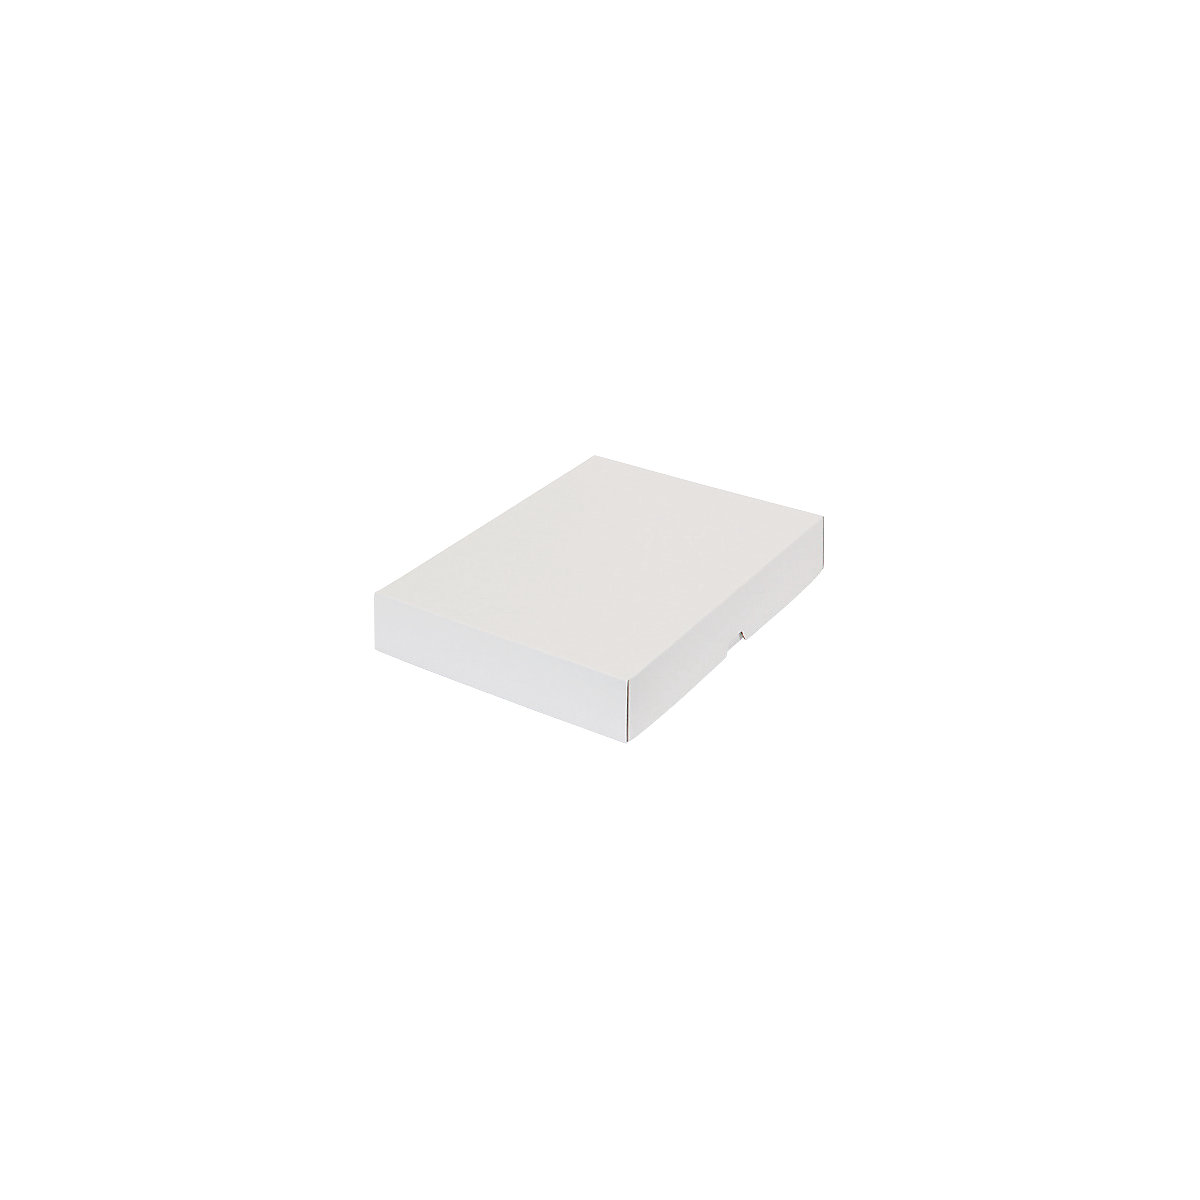 Stülpdeckelkarton, zweiteilig, Innenmaße 301 x 213 x 45 mm, A4, weiß, ab 150 Stk-20